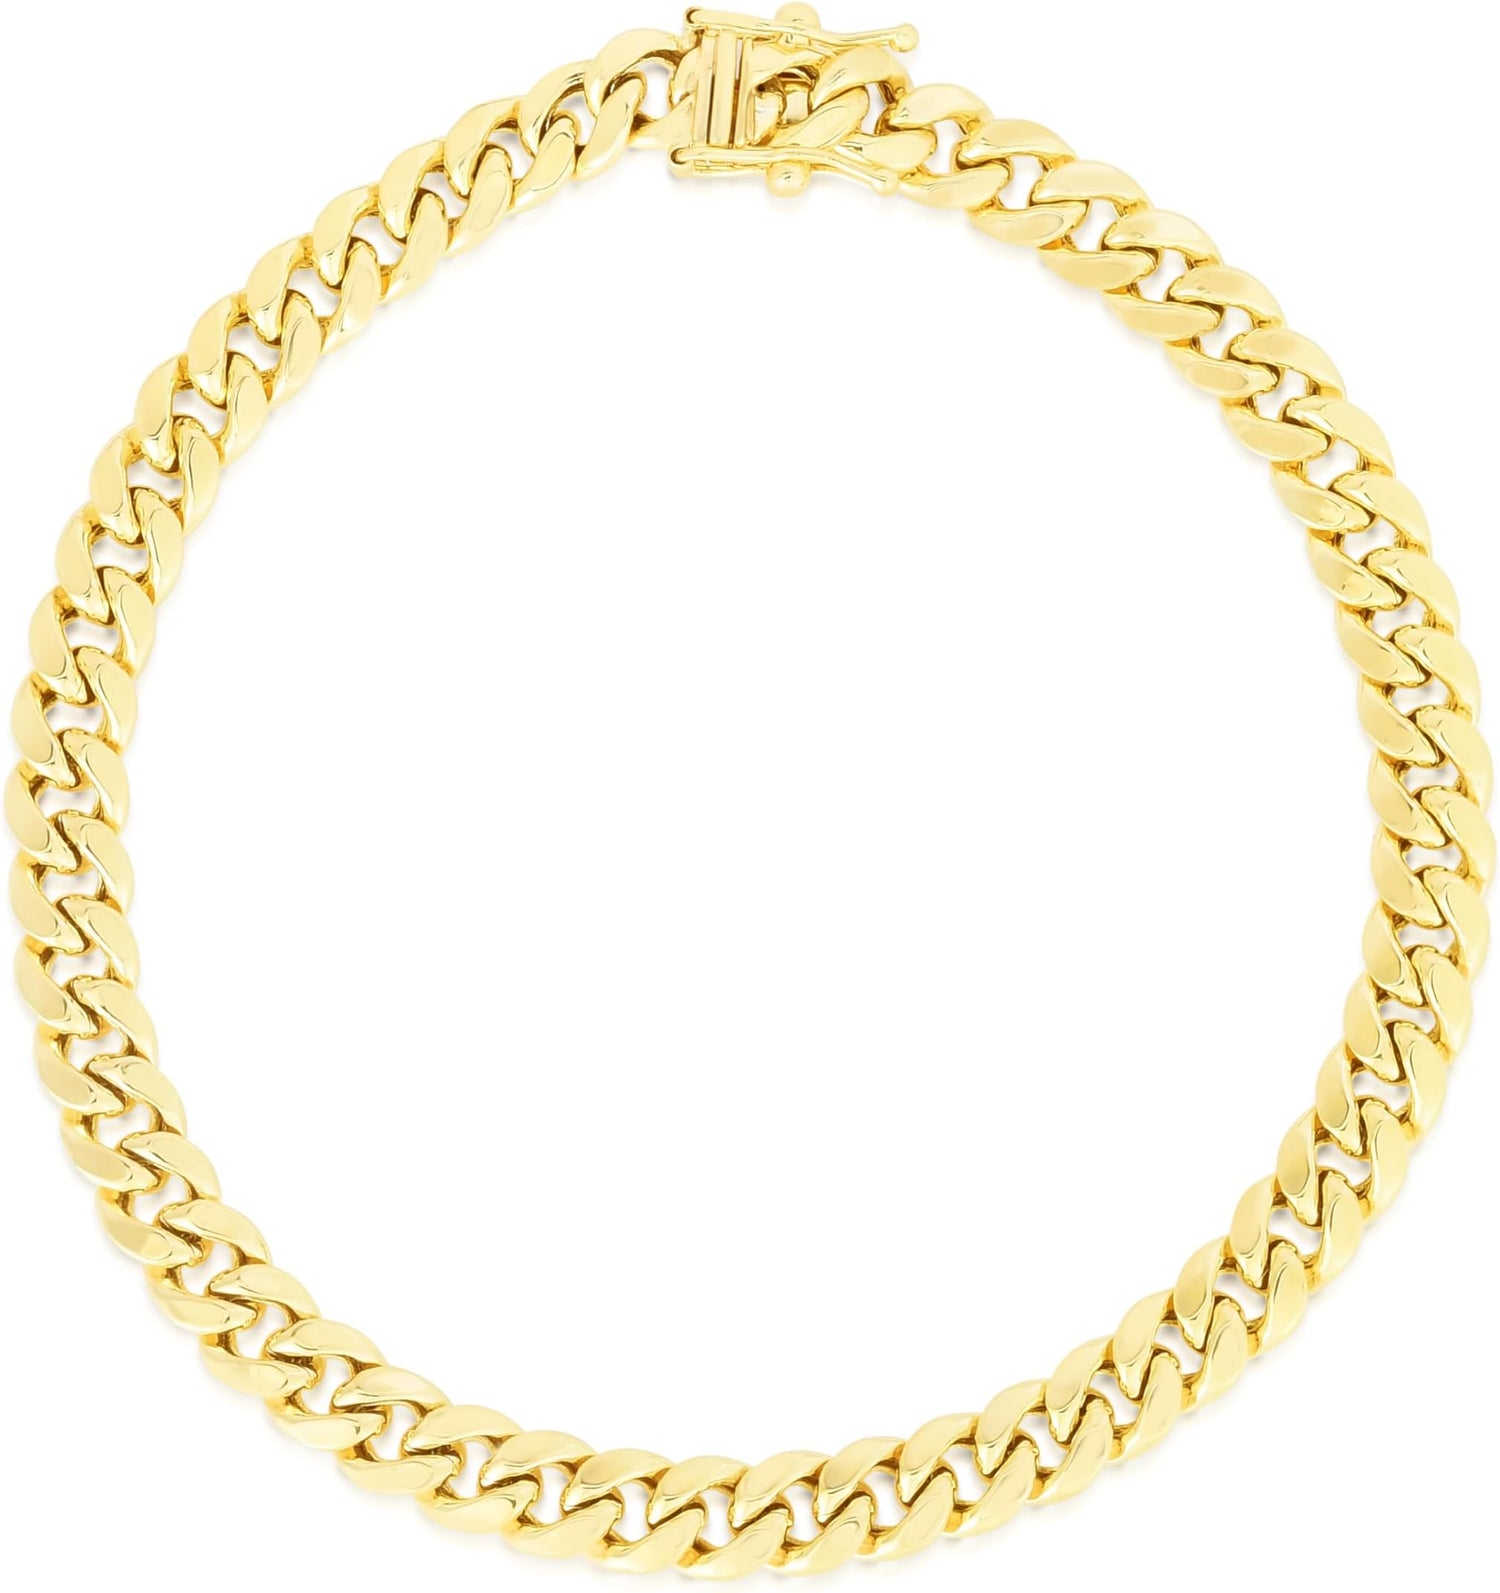 14k Yellow Gold 5mm Semi-Lite Miami Cuban Chain Bracelet